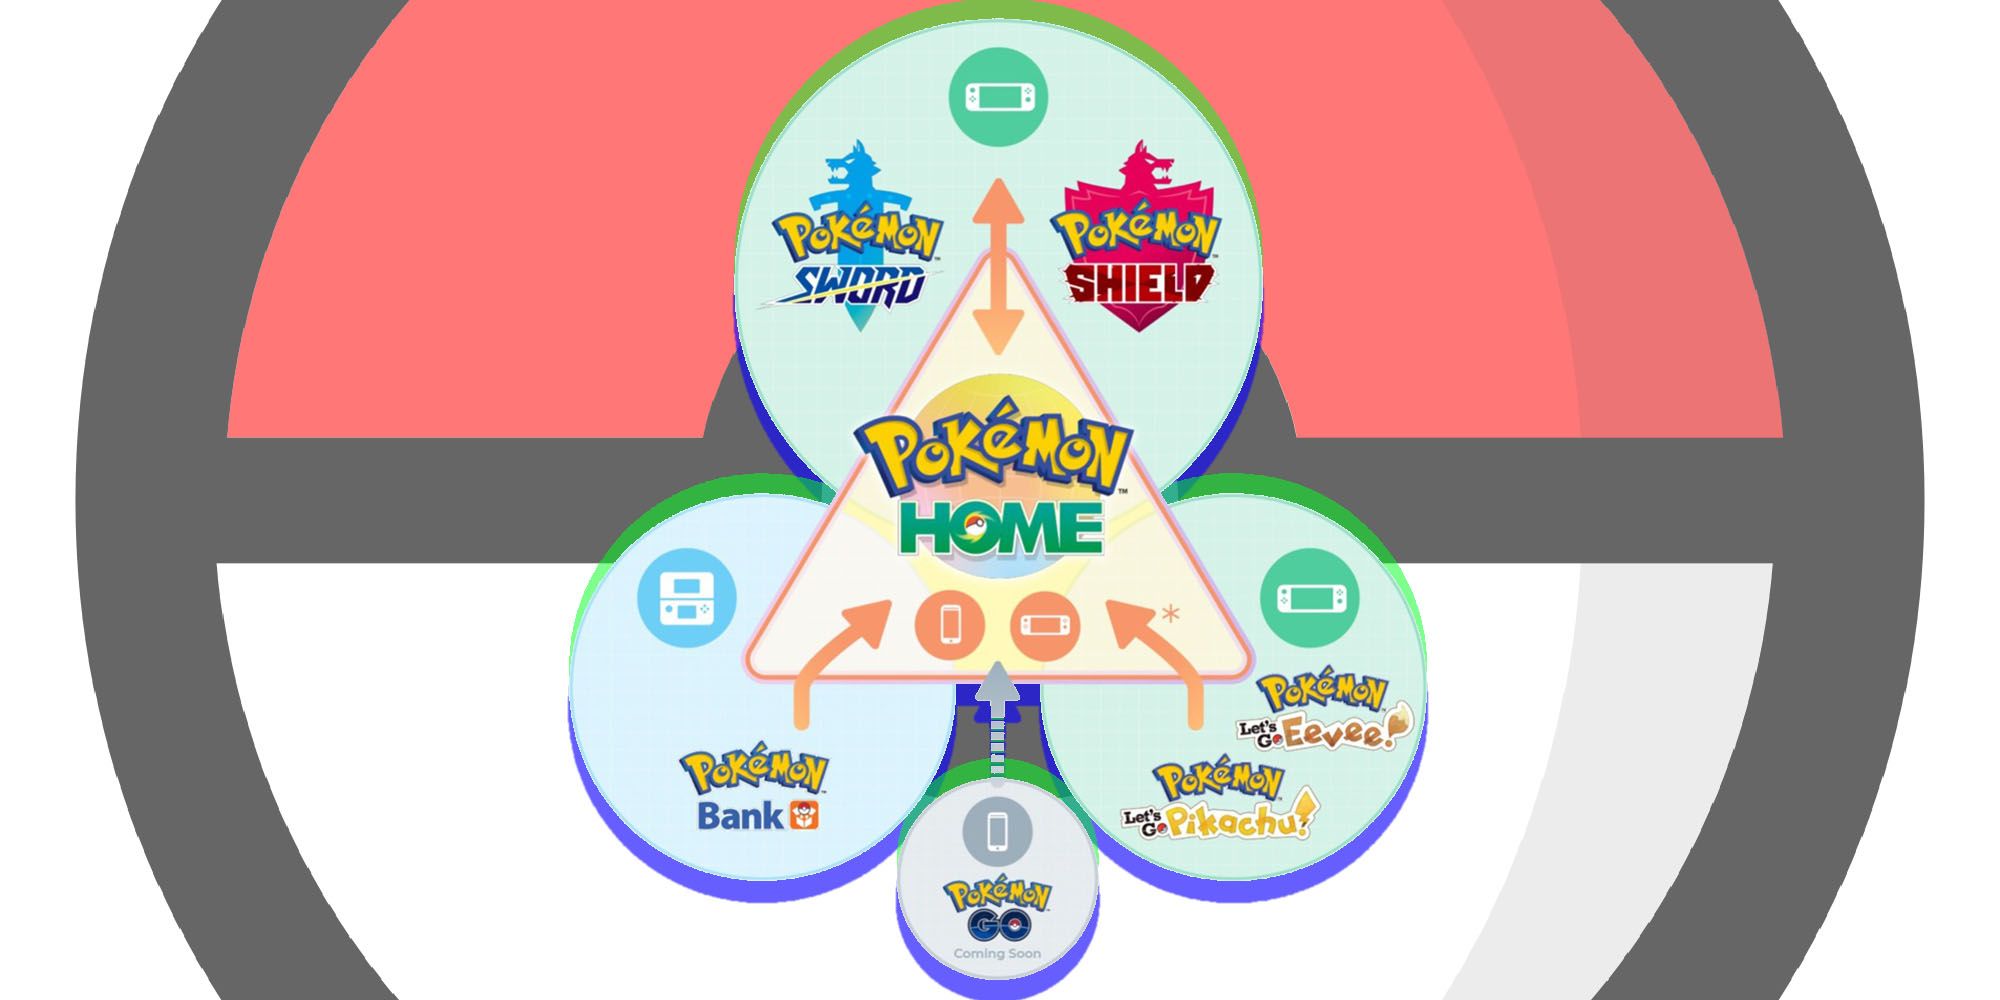 Pokémon Home's structure